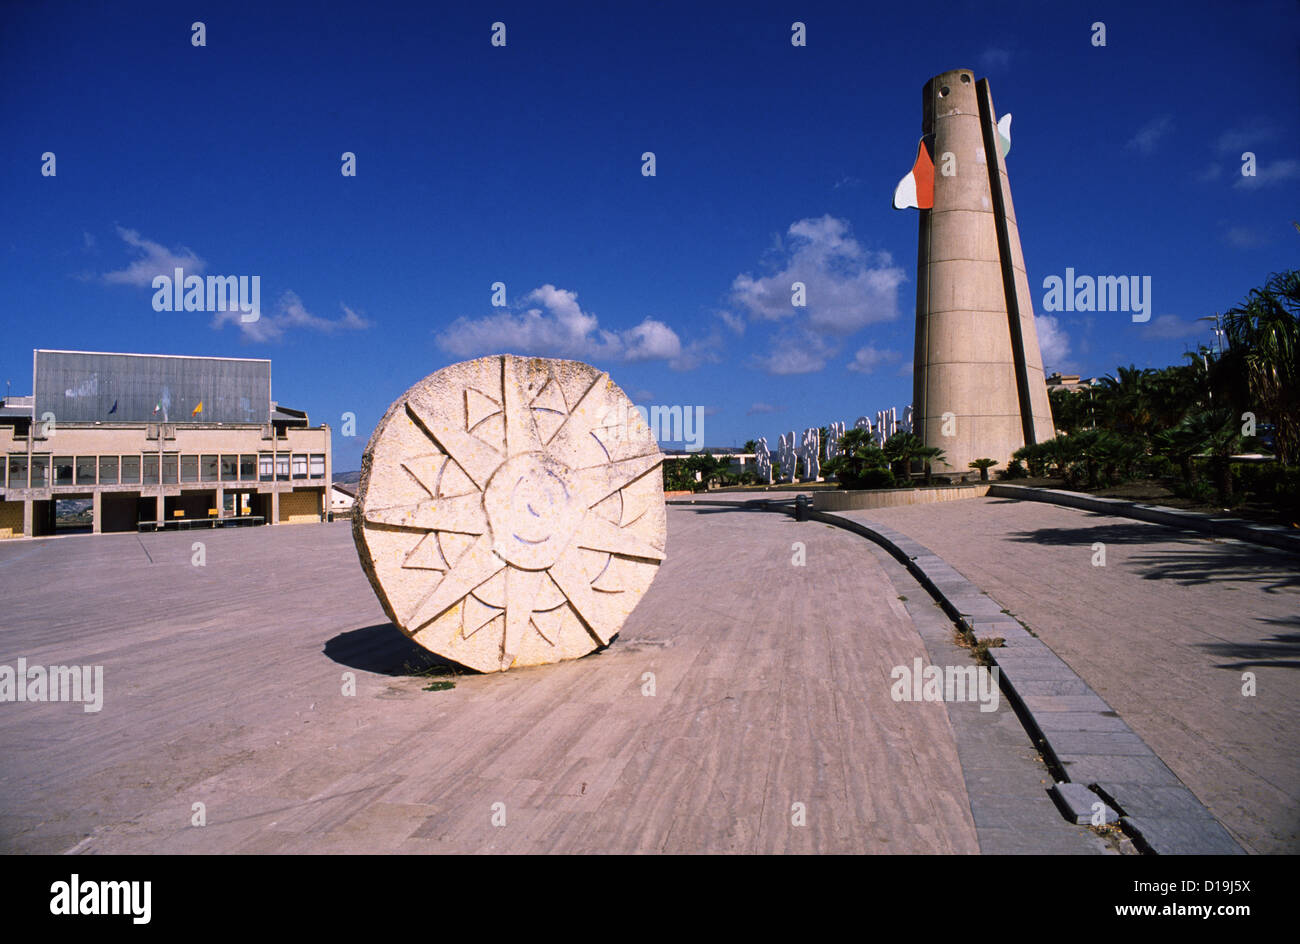 La place publique. Città del Sole - Mimmo Rotella 1987, et torre-orologio, Alessandro Mendrini, Gibellina, Sicile, Italie Banque D'Images